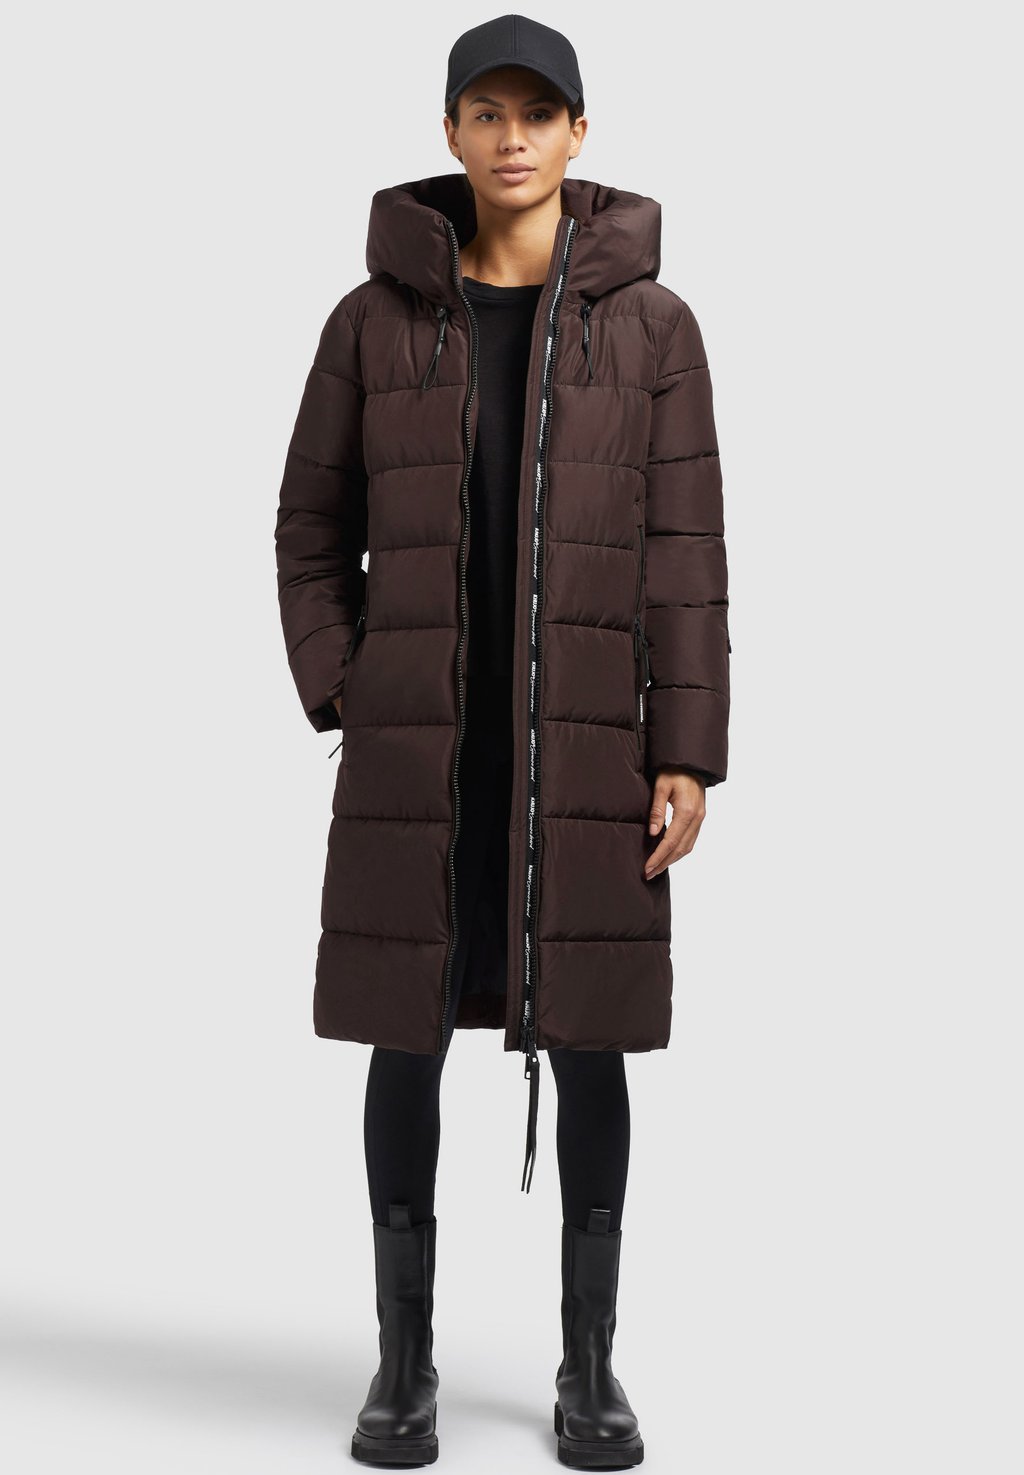 Зимнее пальто Jilias3 khujo, цвет dunkelbraun пальто зимнее khujo коричневый